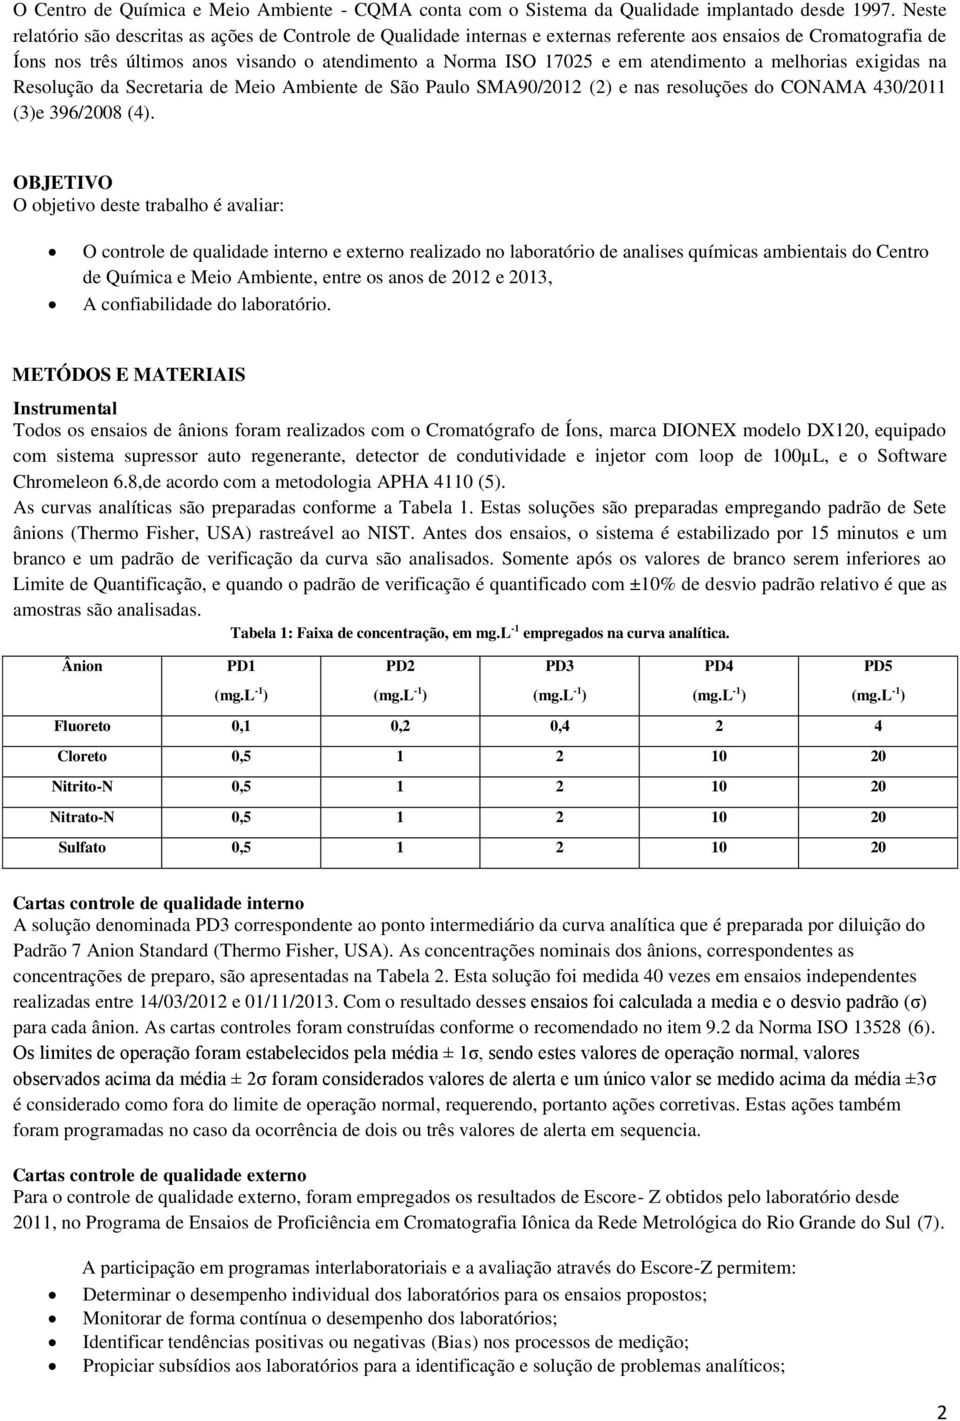 atendimento a melhorias exigidas na Resolução da Secretaria de Meio Ambiente de São Paulo SMA90/2012 (2) e nas resoluções do CONAMA 430/2011 (3)e 396/2008 (4).